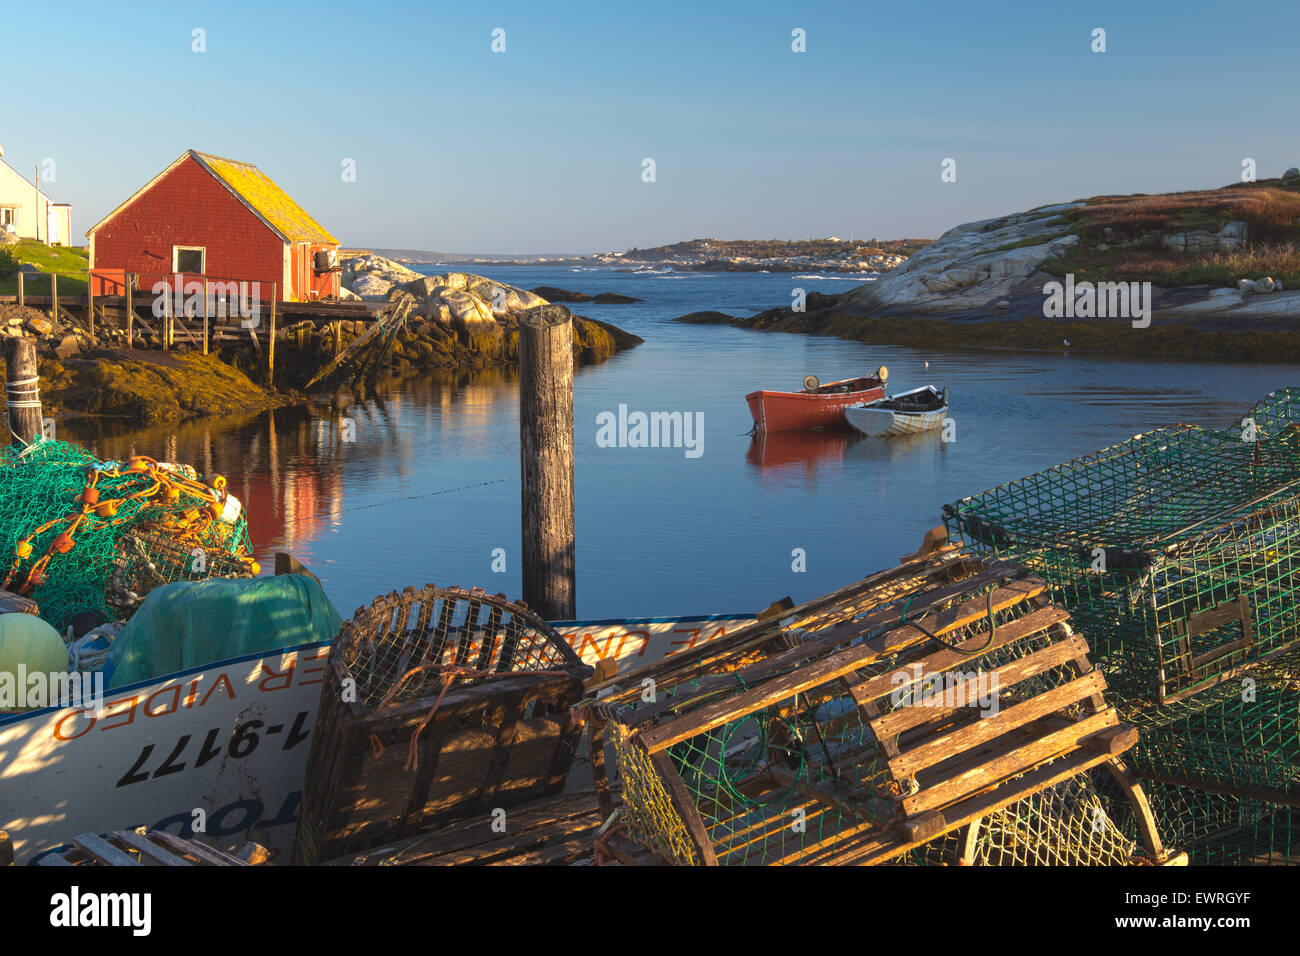 Peggy's Cove en Nouvelle-Écosse, Canada village de pêcheurs avec bateaux de pêche du homard et des casiers à homard. Ciel bleu et bâtiments colorés. Banque D'Images